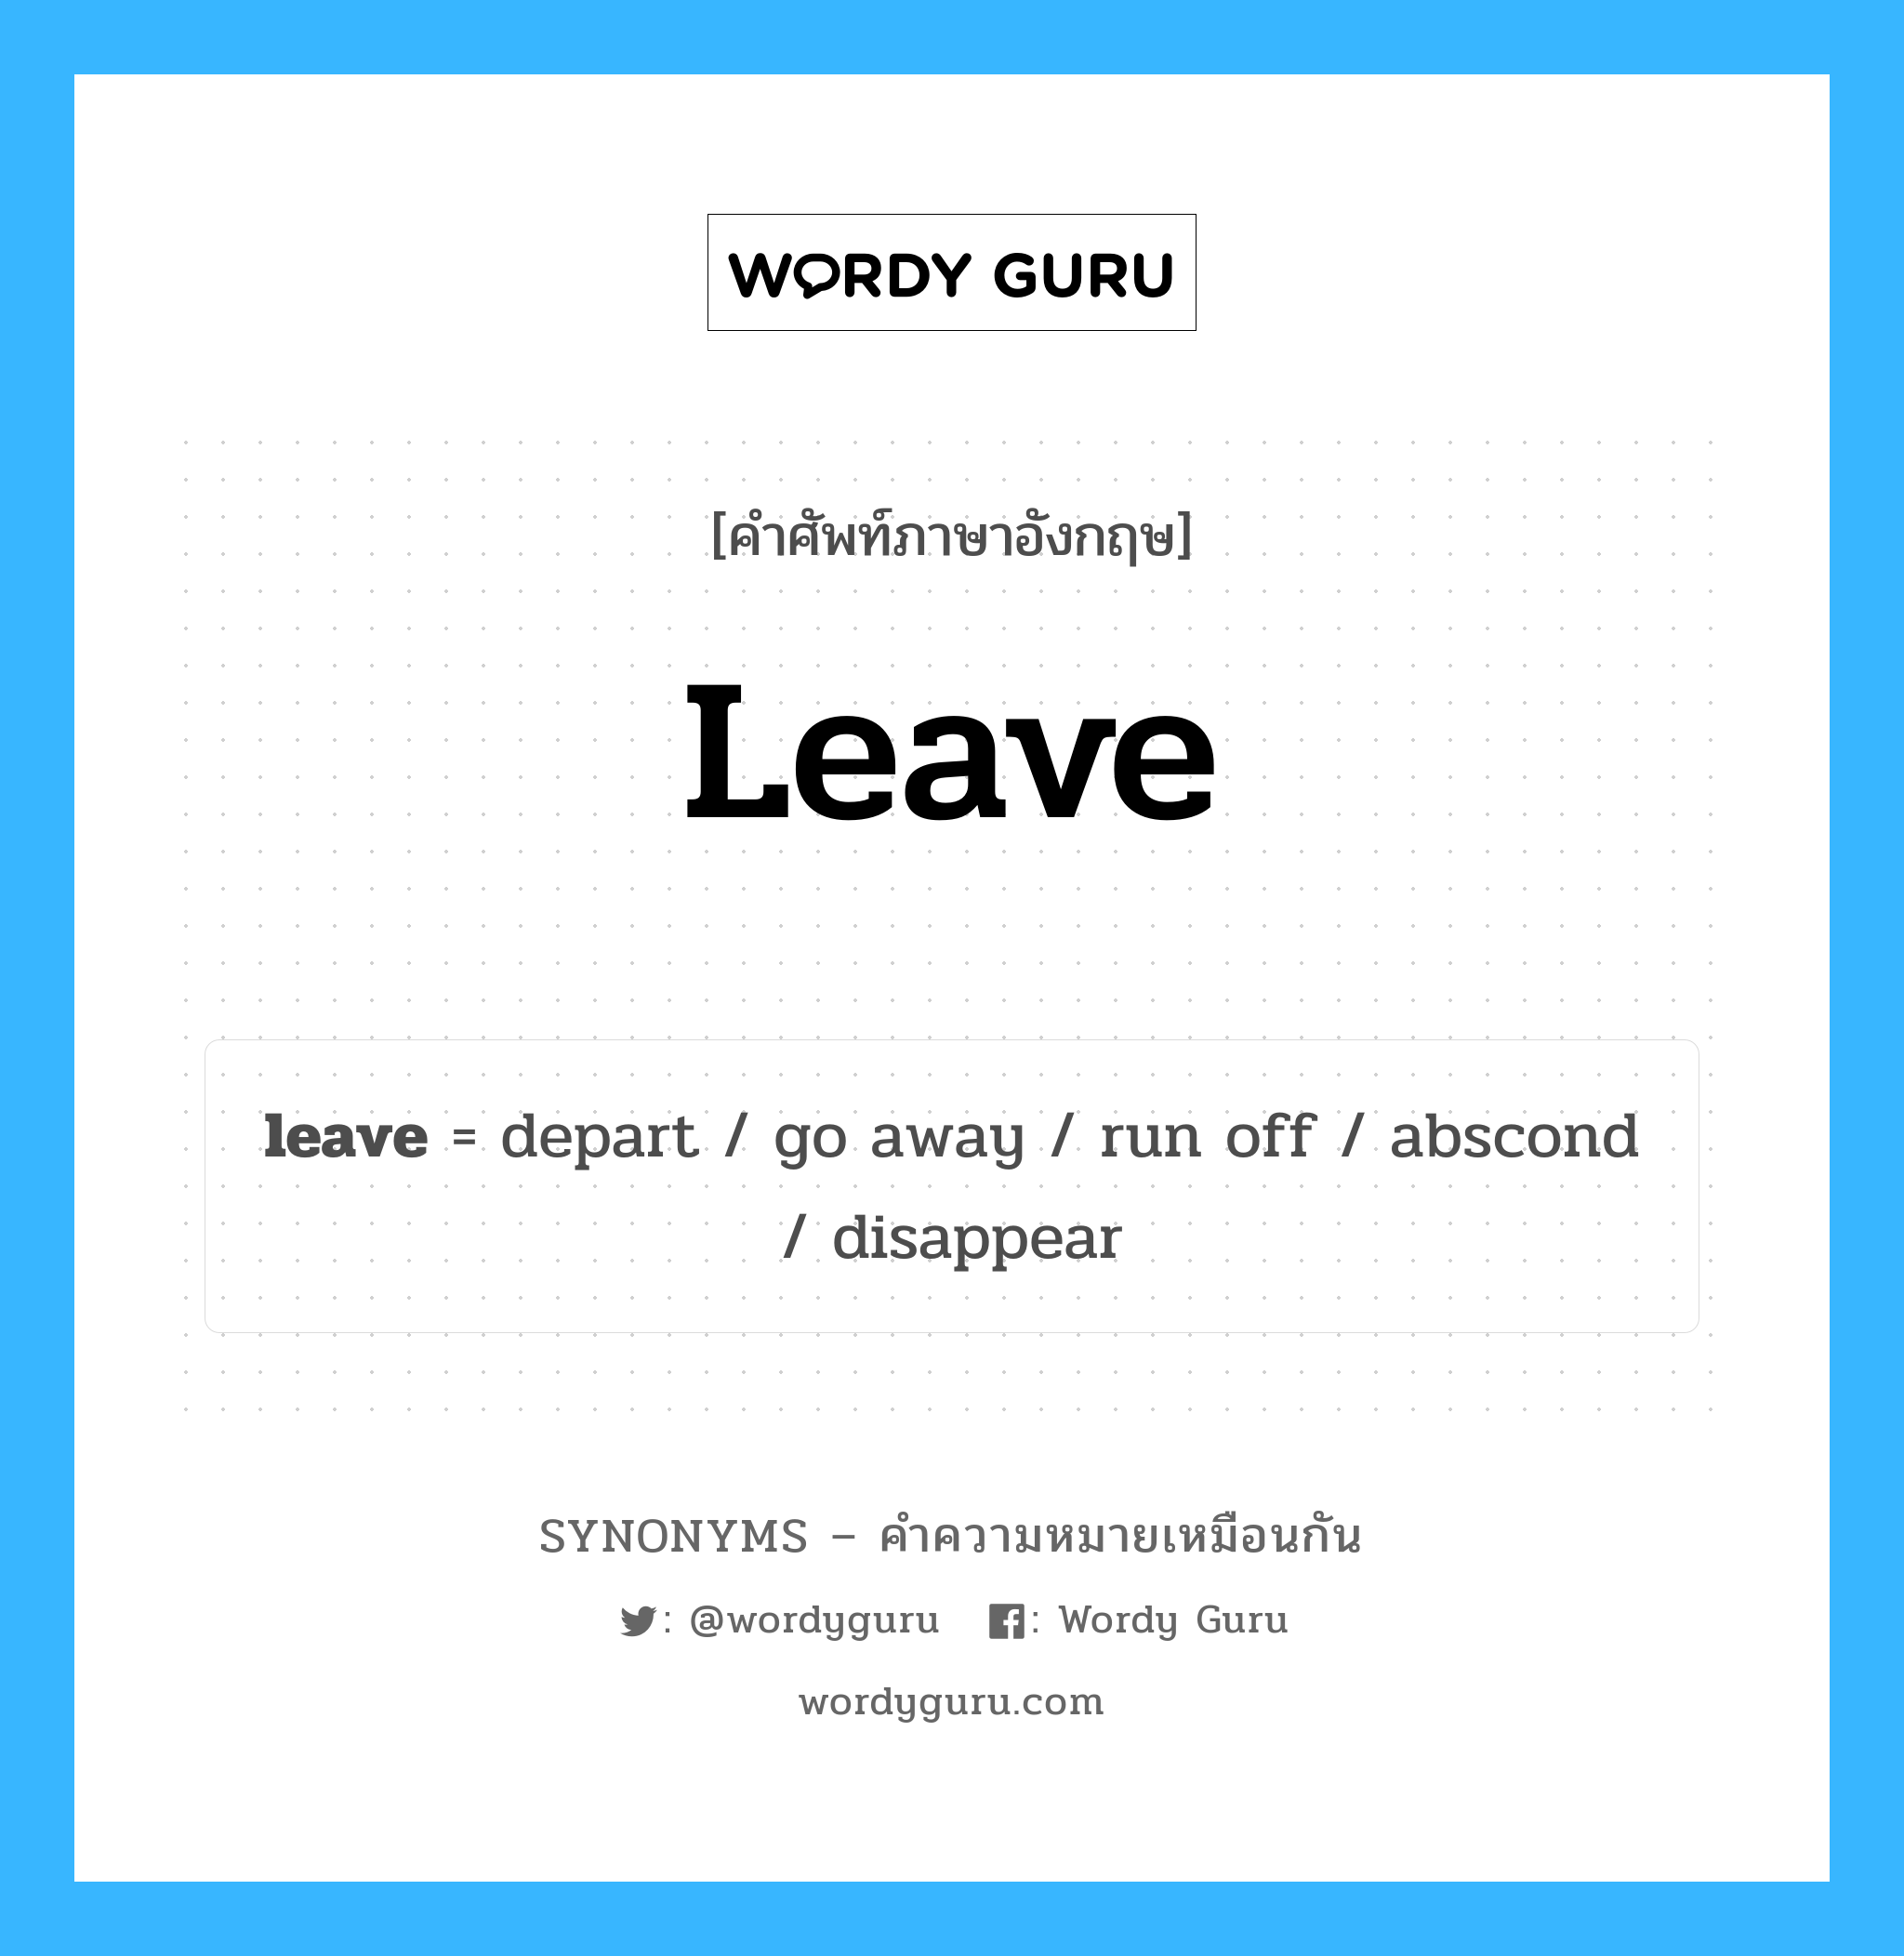 run off เป็นหนึ่งใน leave และมีคำอื่น ๆ อีกดังนี้, คำศัพท์ภาษาอังกฤษ run off ความหมายคล้ายกันกับ leave แปลว่า ใช้ปิด หมวด leave